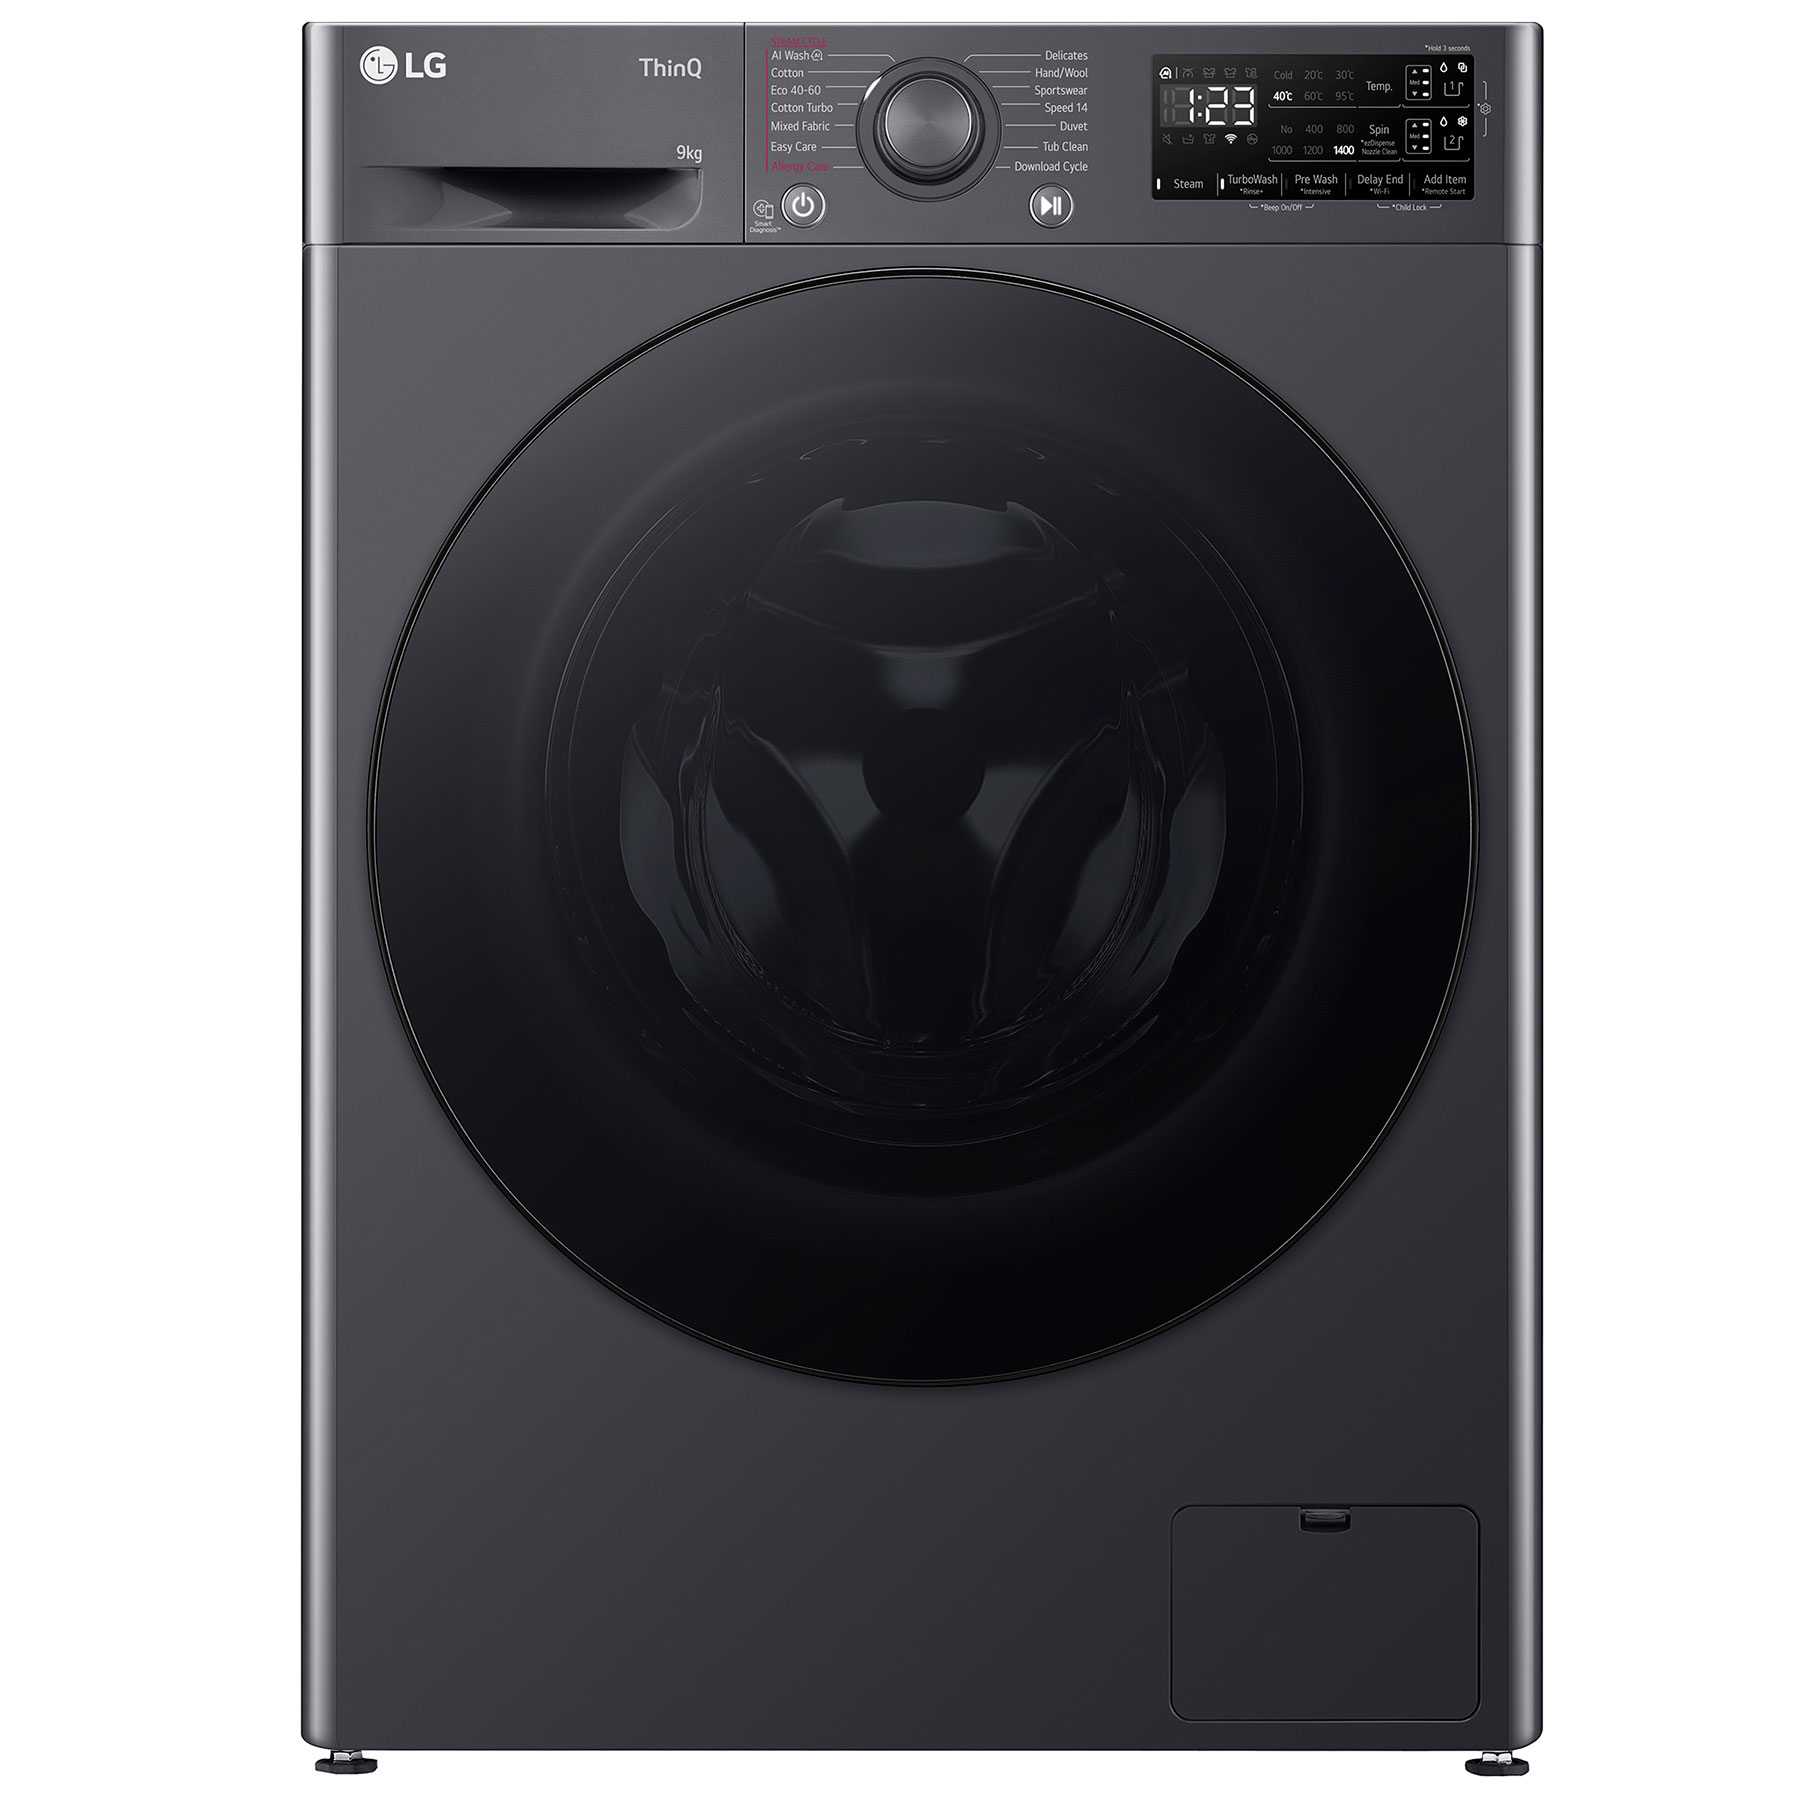 LG F4Y509GBLA1 Washing Machine in Grey 1400rpm 9kg A Rated Wi Fi